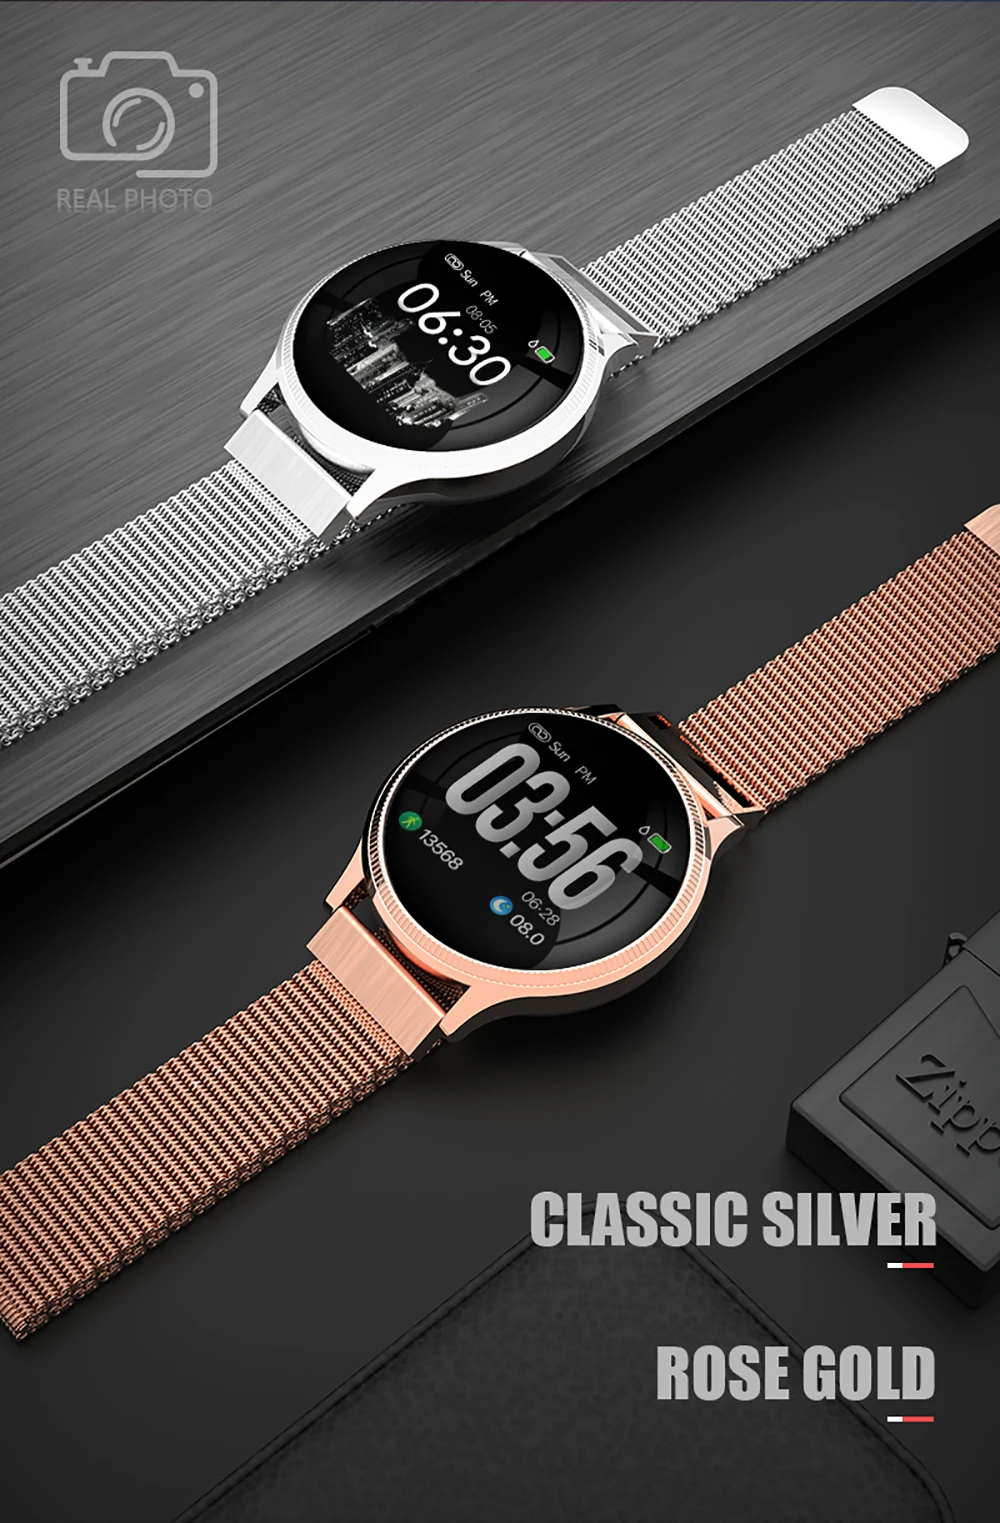 MK08 Смарт-часы для мужчин IP67 Водонепроницаемый кровяное давление Smartwatch монитор сердечного ритма спортивный браслет для женщин для Android IOS